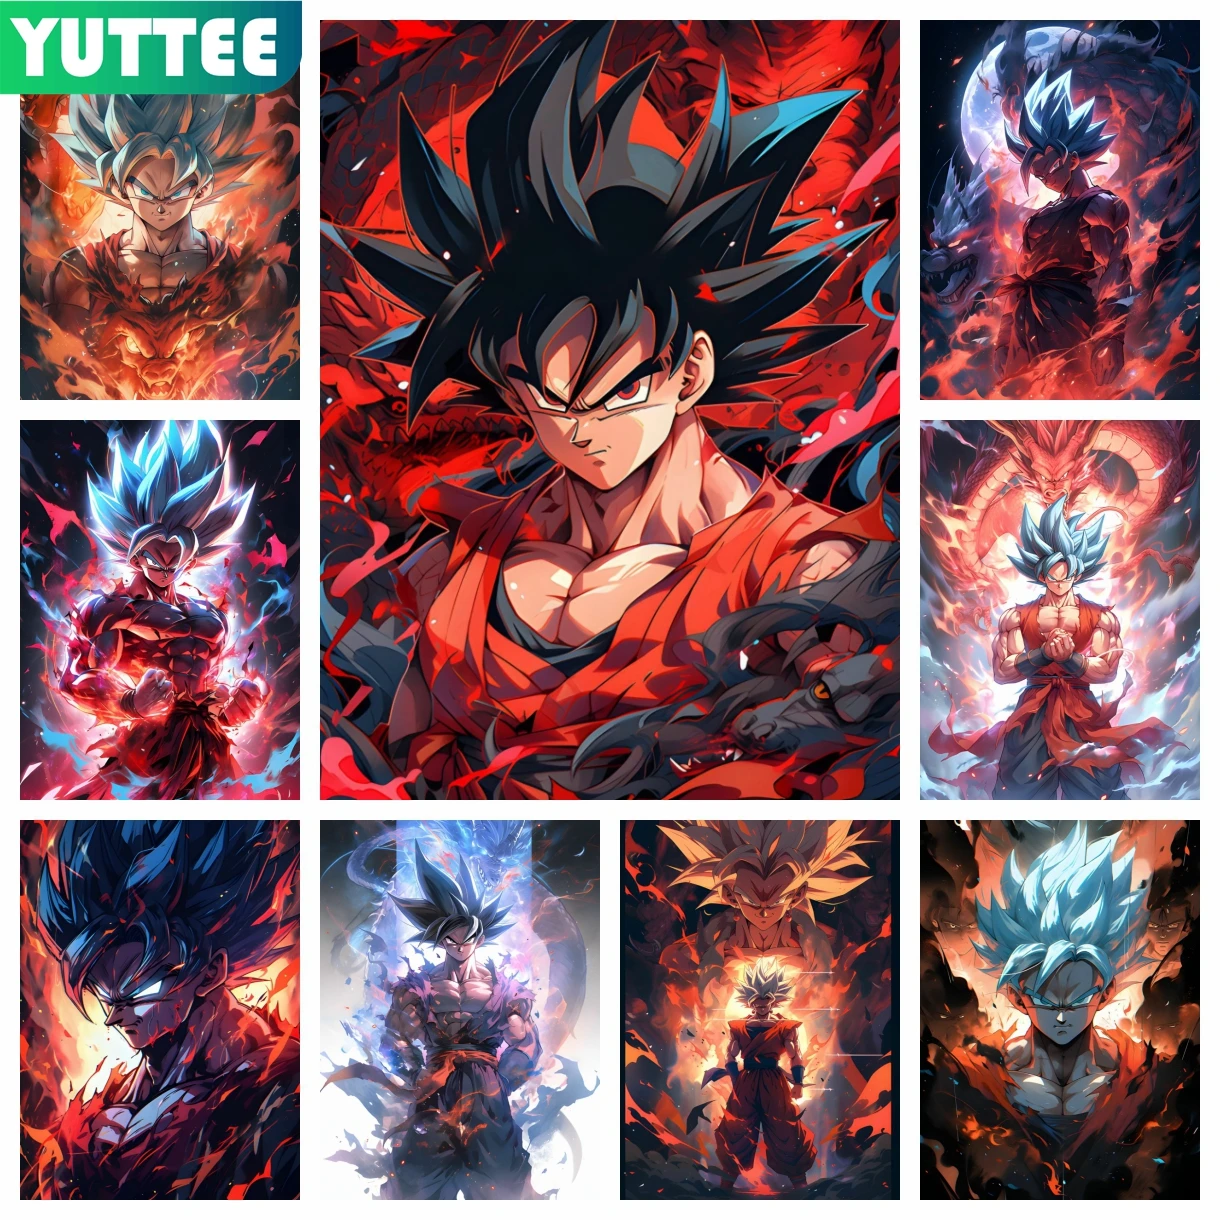 Goku Black - Diamond Paintings 